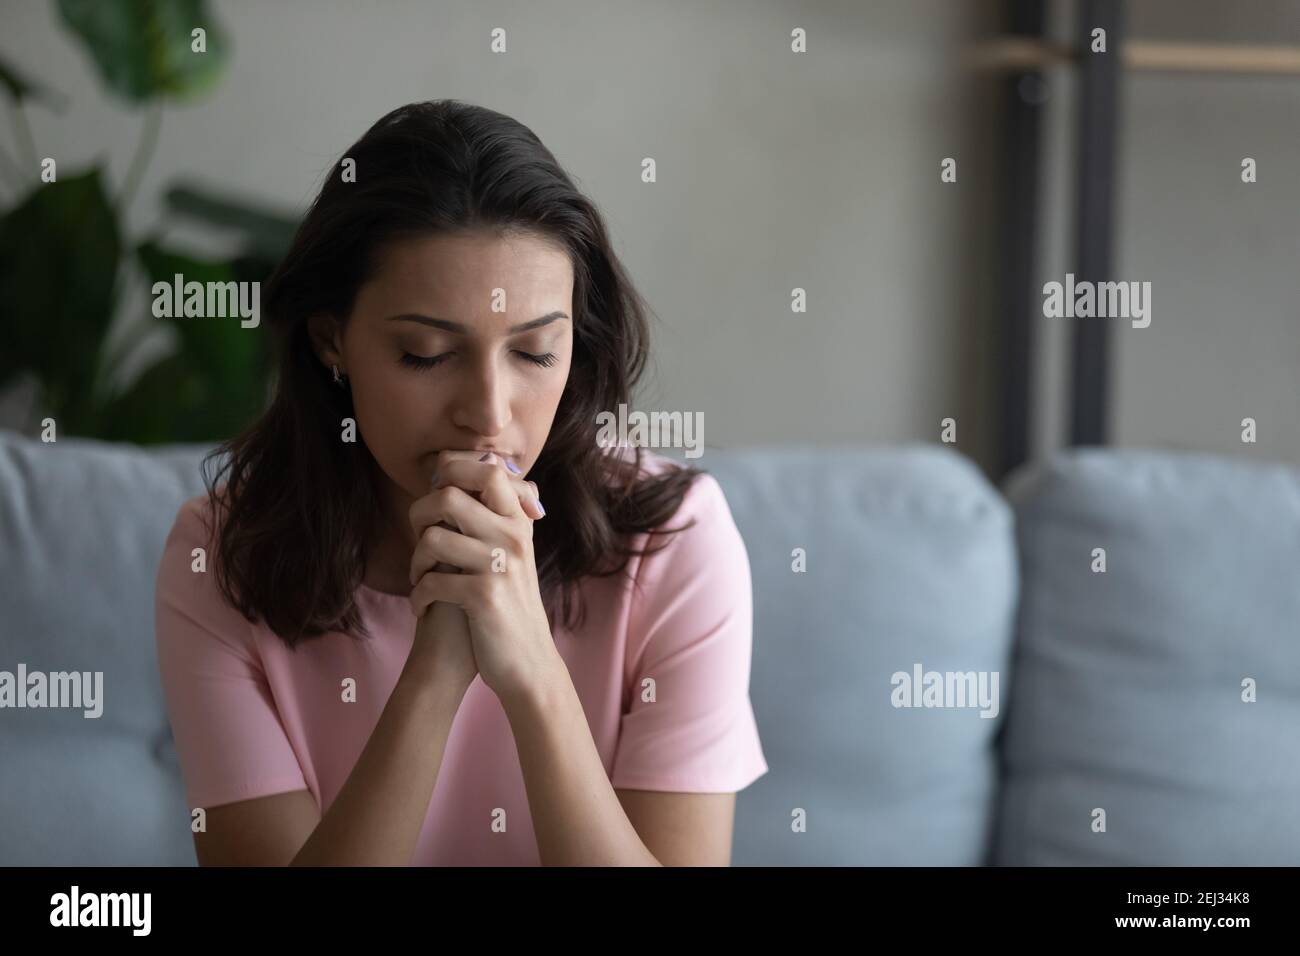 Besorgte junge arabische Frau, die Gott betet und versucht, sich zu konzentrieren Stockfoto